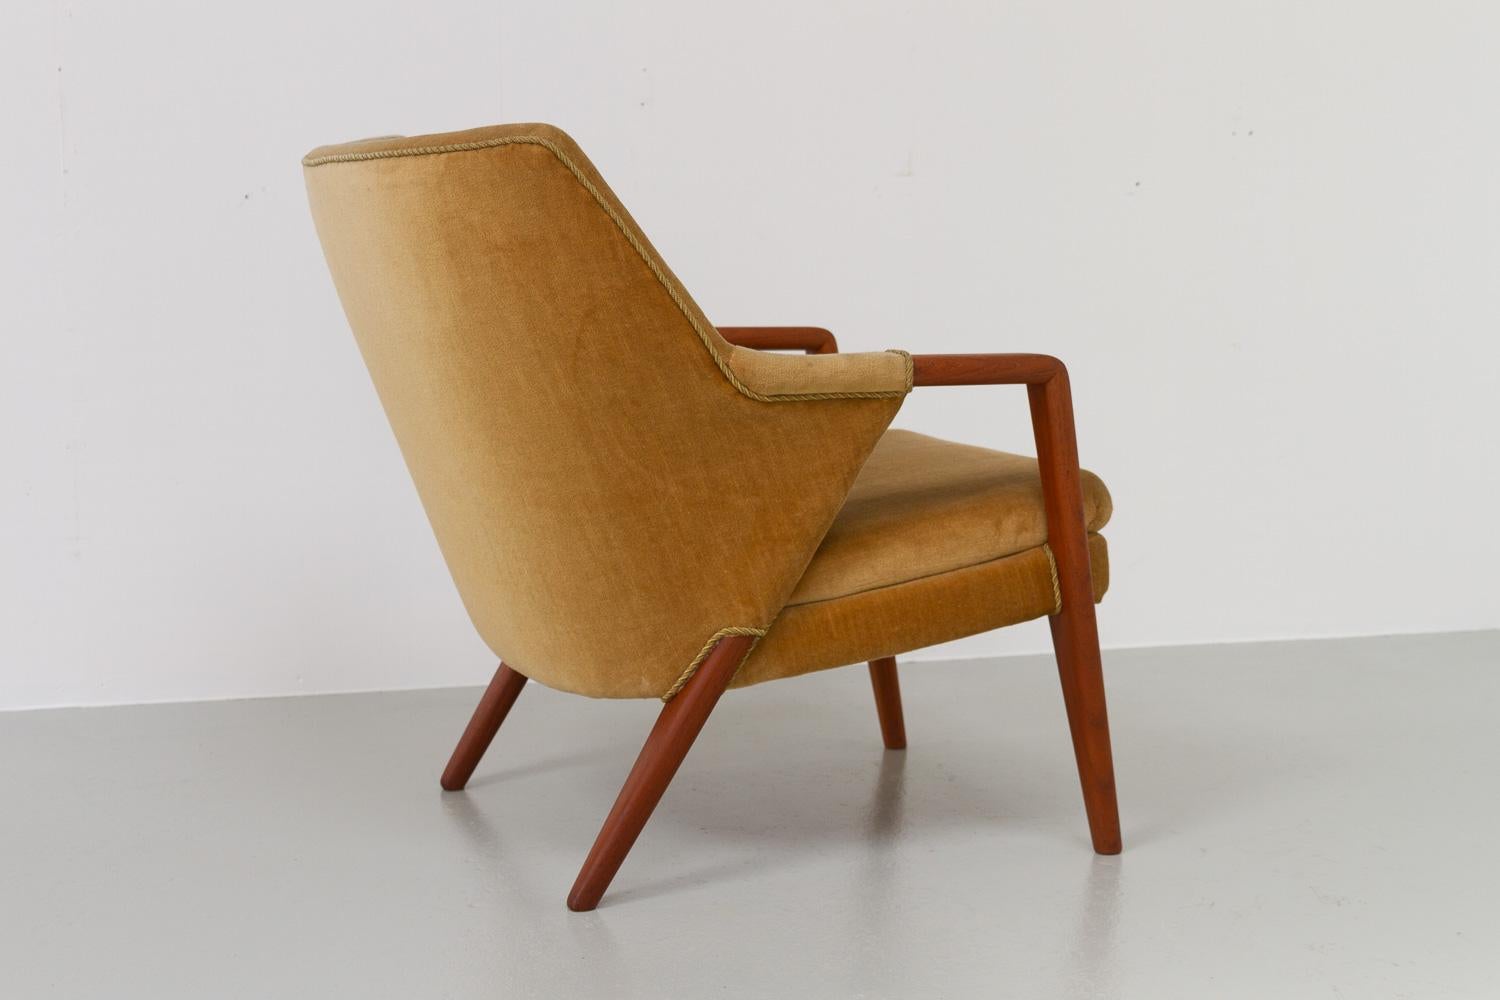 Mid-20th Century Danish Modern Golden Velvet Lounge Chair by Kurt Olsen, 1950s.